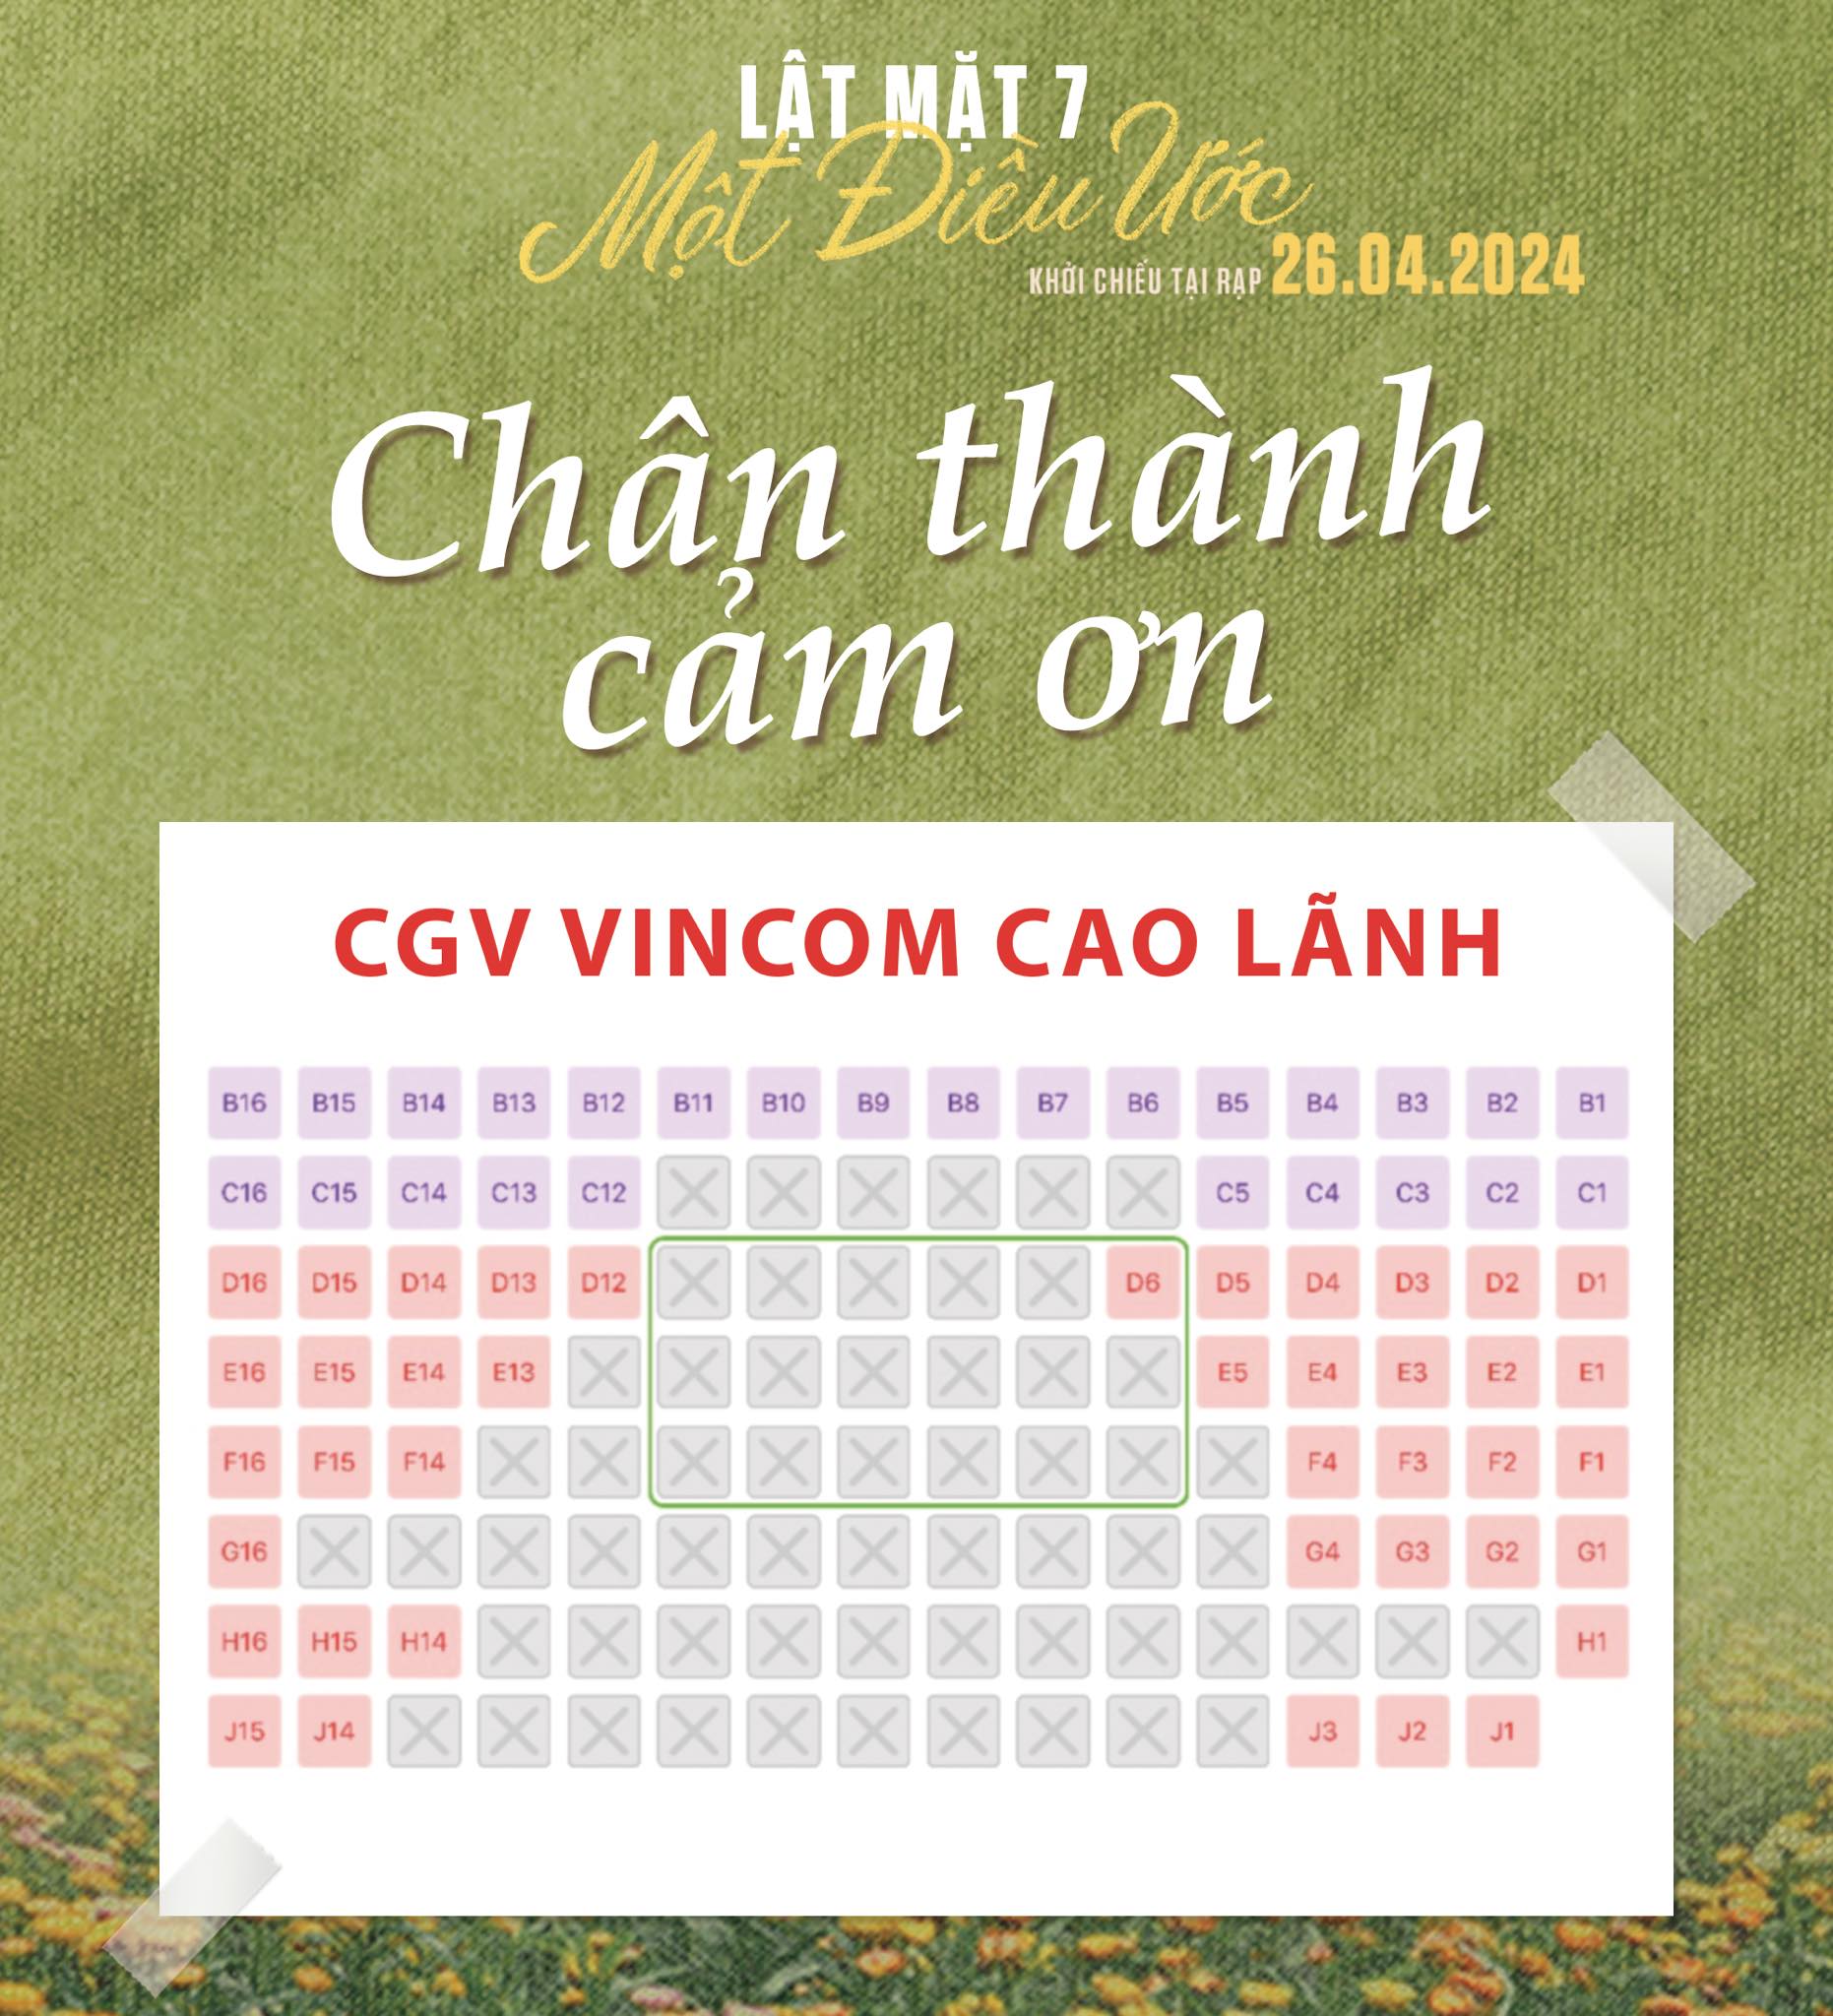 Lật Mặt 7 mới chiếu đã thống trị phòng vé Việt, doanh thu trong ngày gấp 7 lần phim 18+ của Thái Hòa- Ảnh 3.